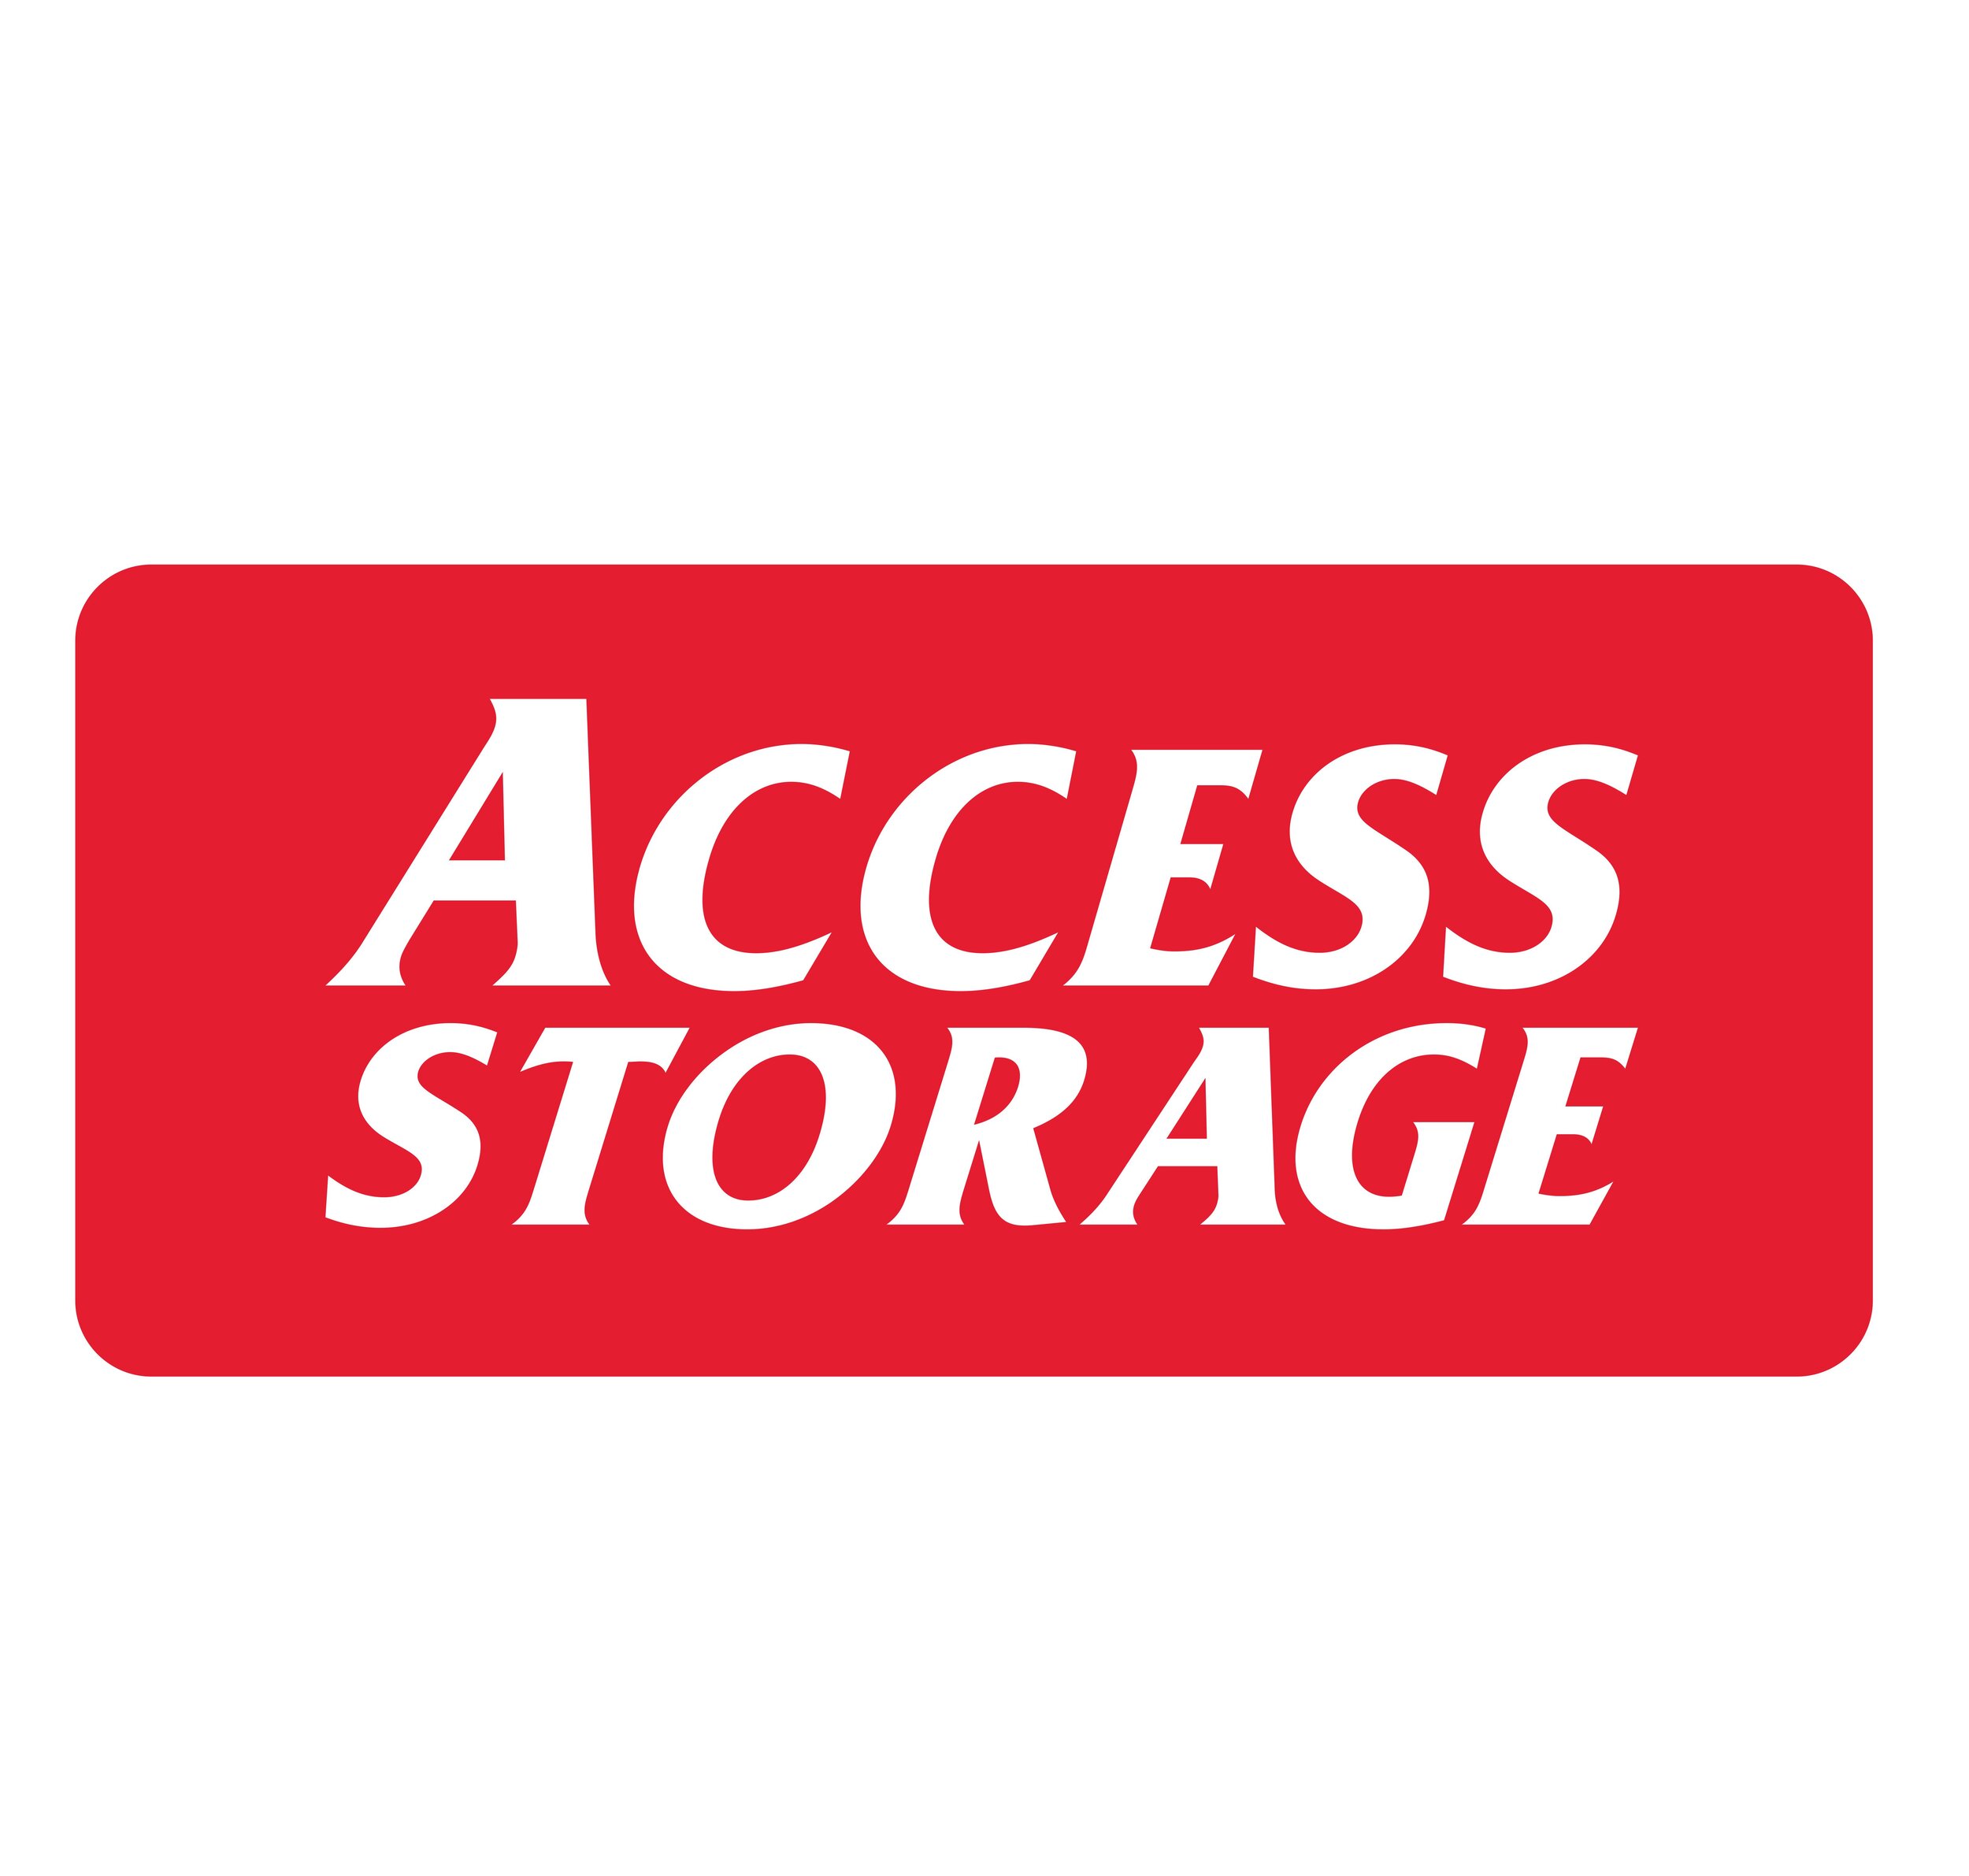 Access storage.jpg